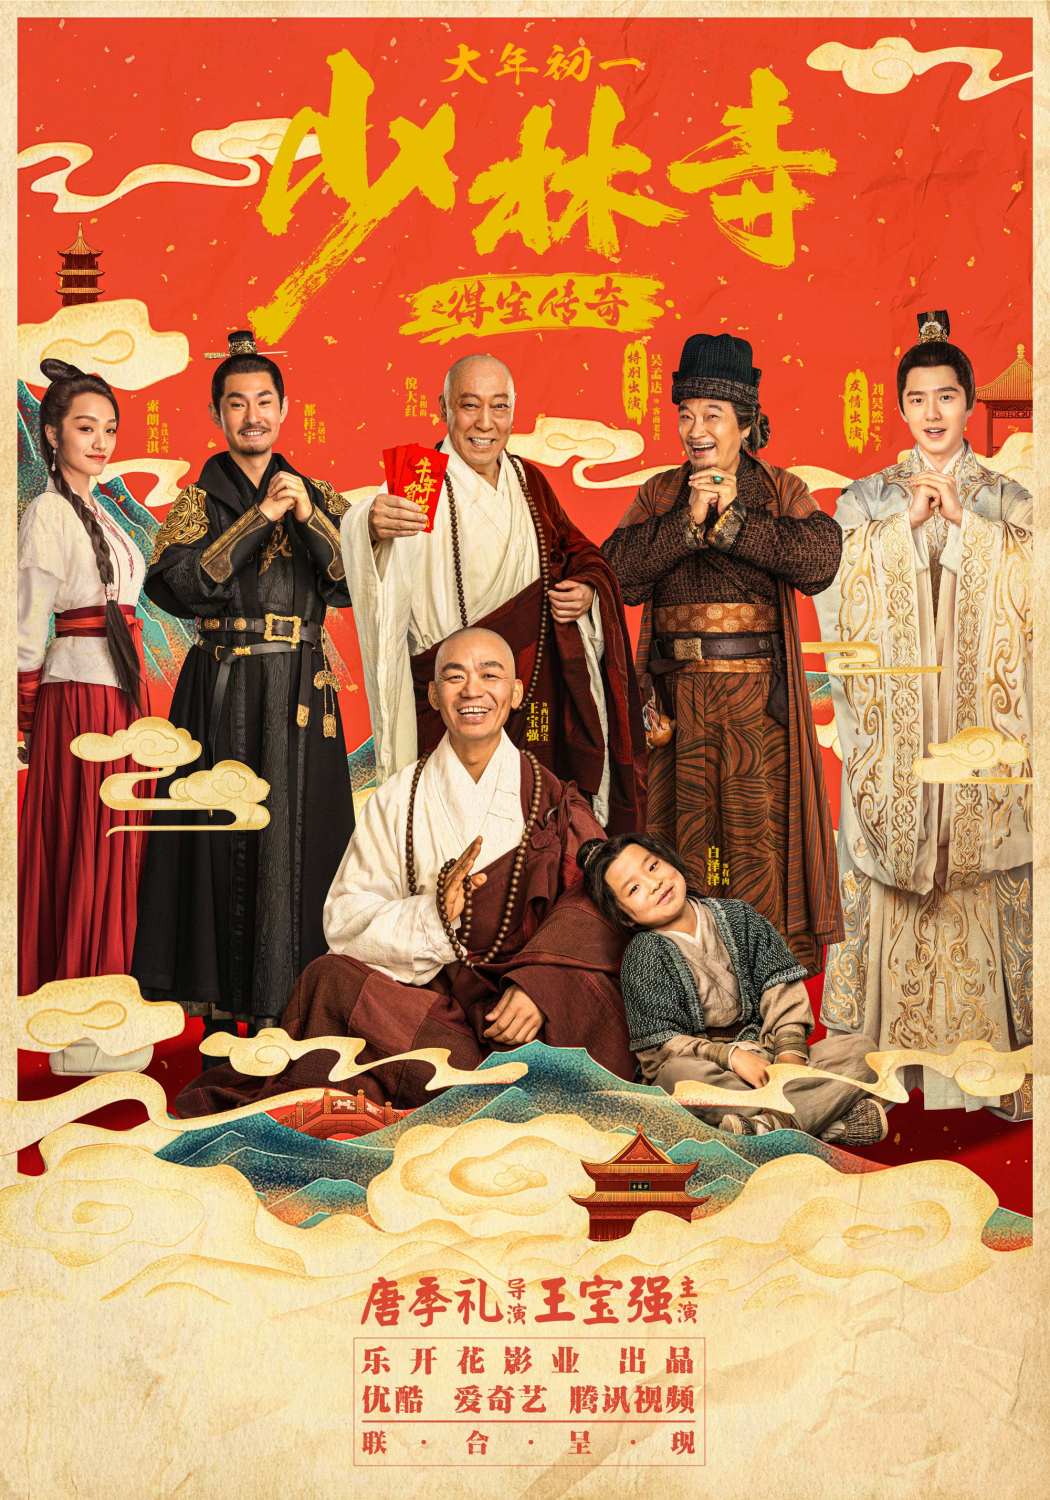 Banner Phim Truyền Kỳ Đắc Bảo Ở Thiếu Lâm Tự (Shao Lin Shi Zhi De Bao Chuan Qi)